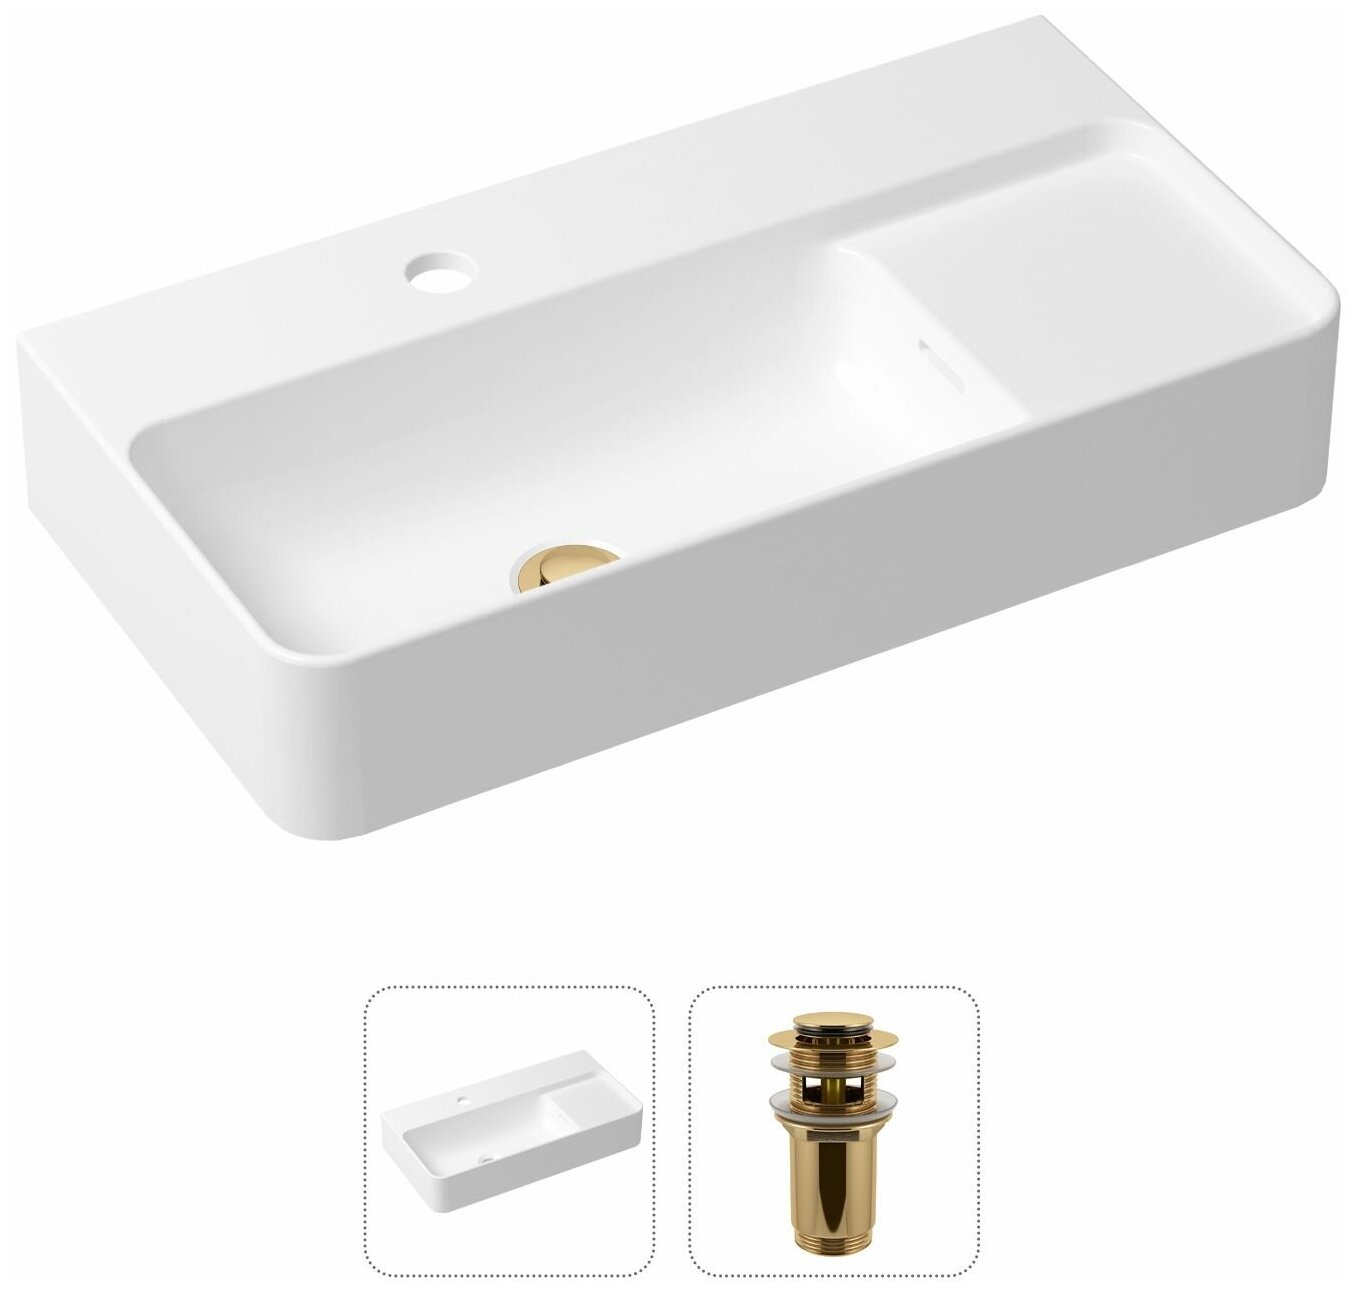 Комплект 2 в 1 Lavinia Boho Bathroom Sink 21520882: накладная фарфоровая раковина 60 см, донный клапан